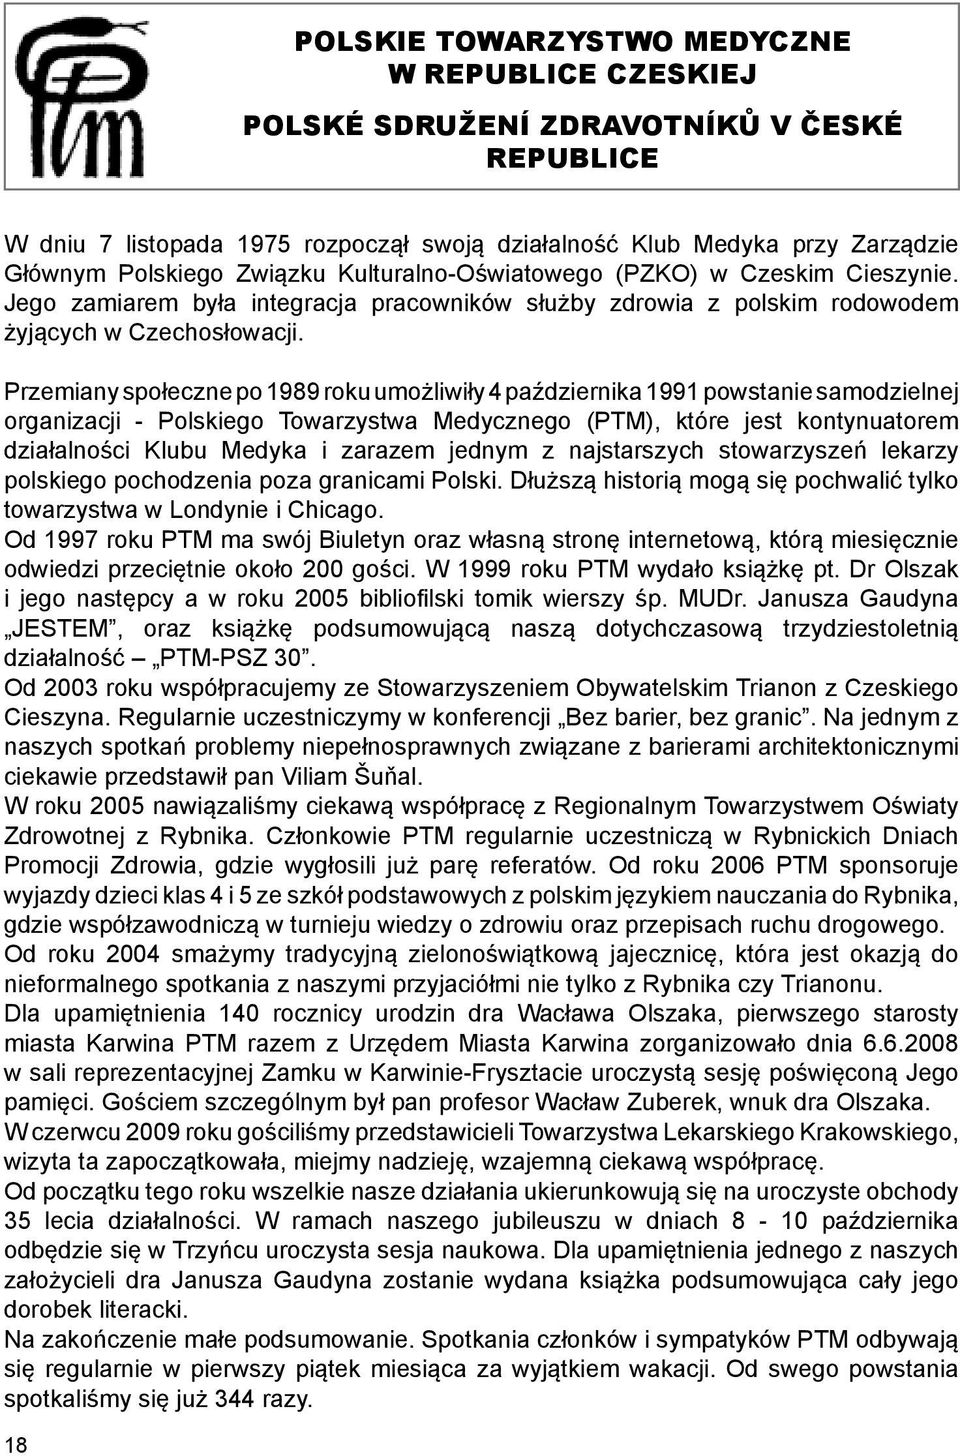 Przemiany społeczne po 1989 roku umożliwiły 4 października 1991 powstanie samodzielnej organizacji - Polskiego Towarzystwa Medycznego (PTM), które jest kontynuatorem działalności Klubu Medyka i